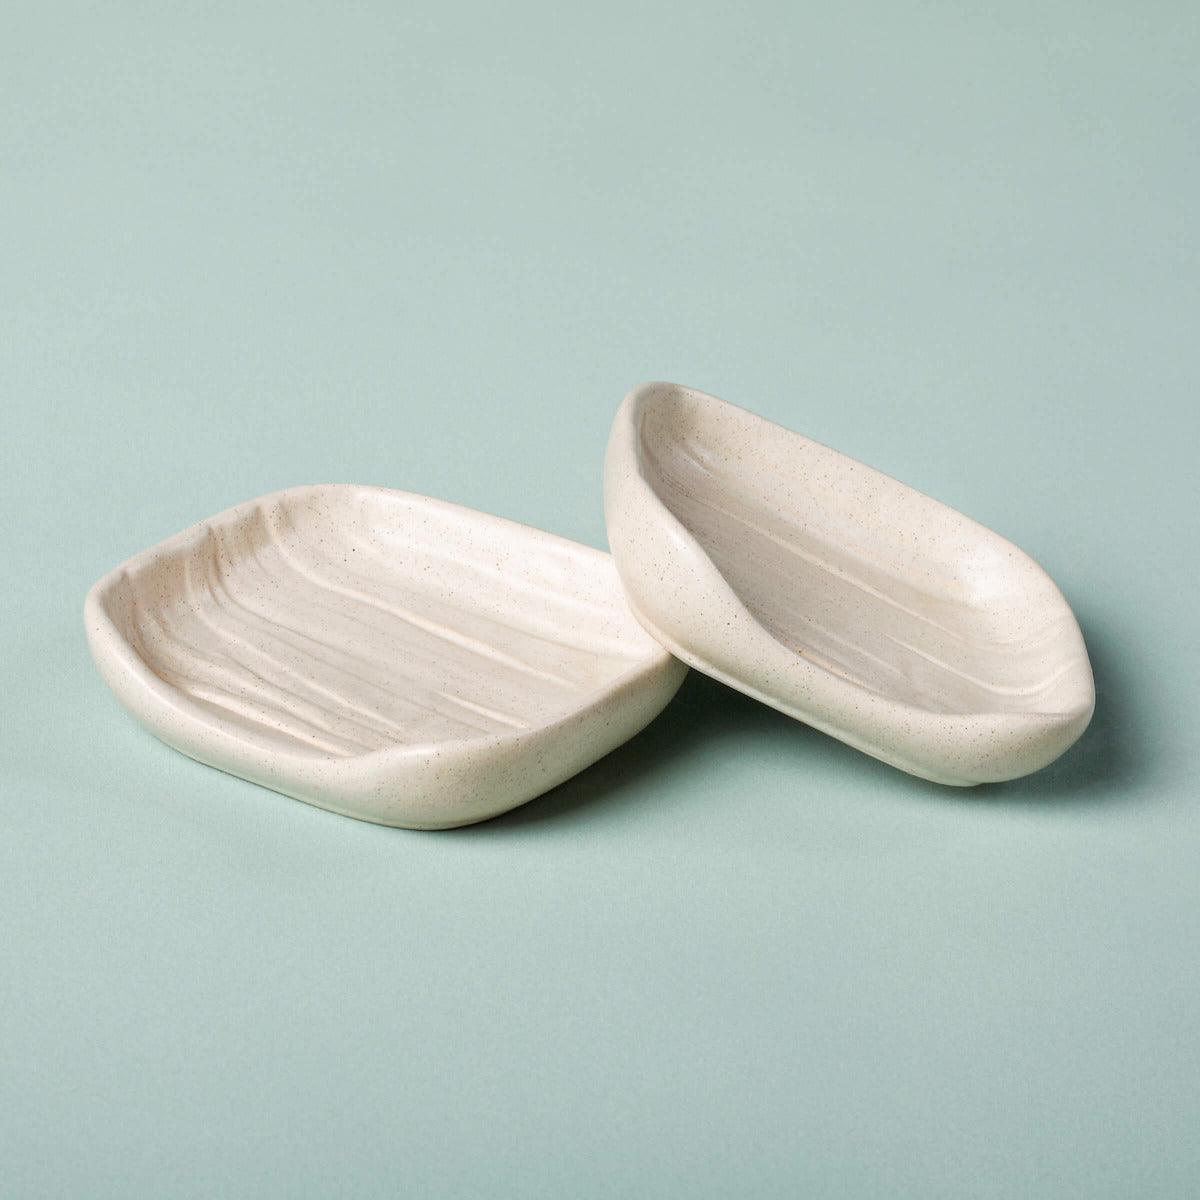 Egg Shell Ceramic Spoon Rest (Set of 2)